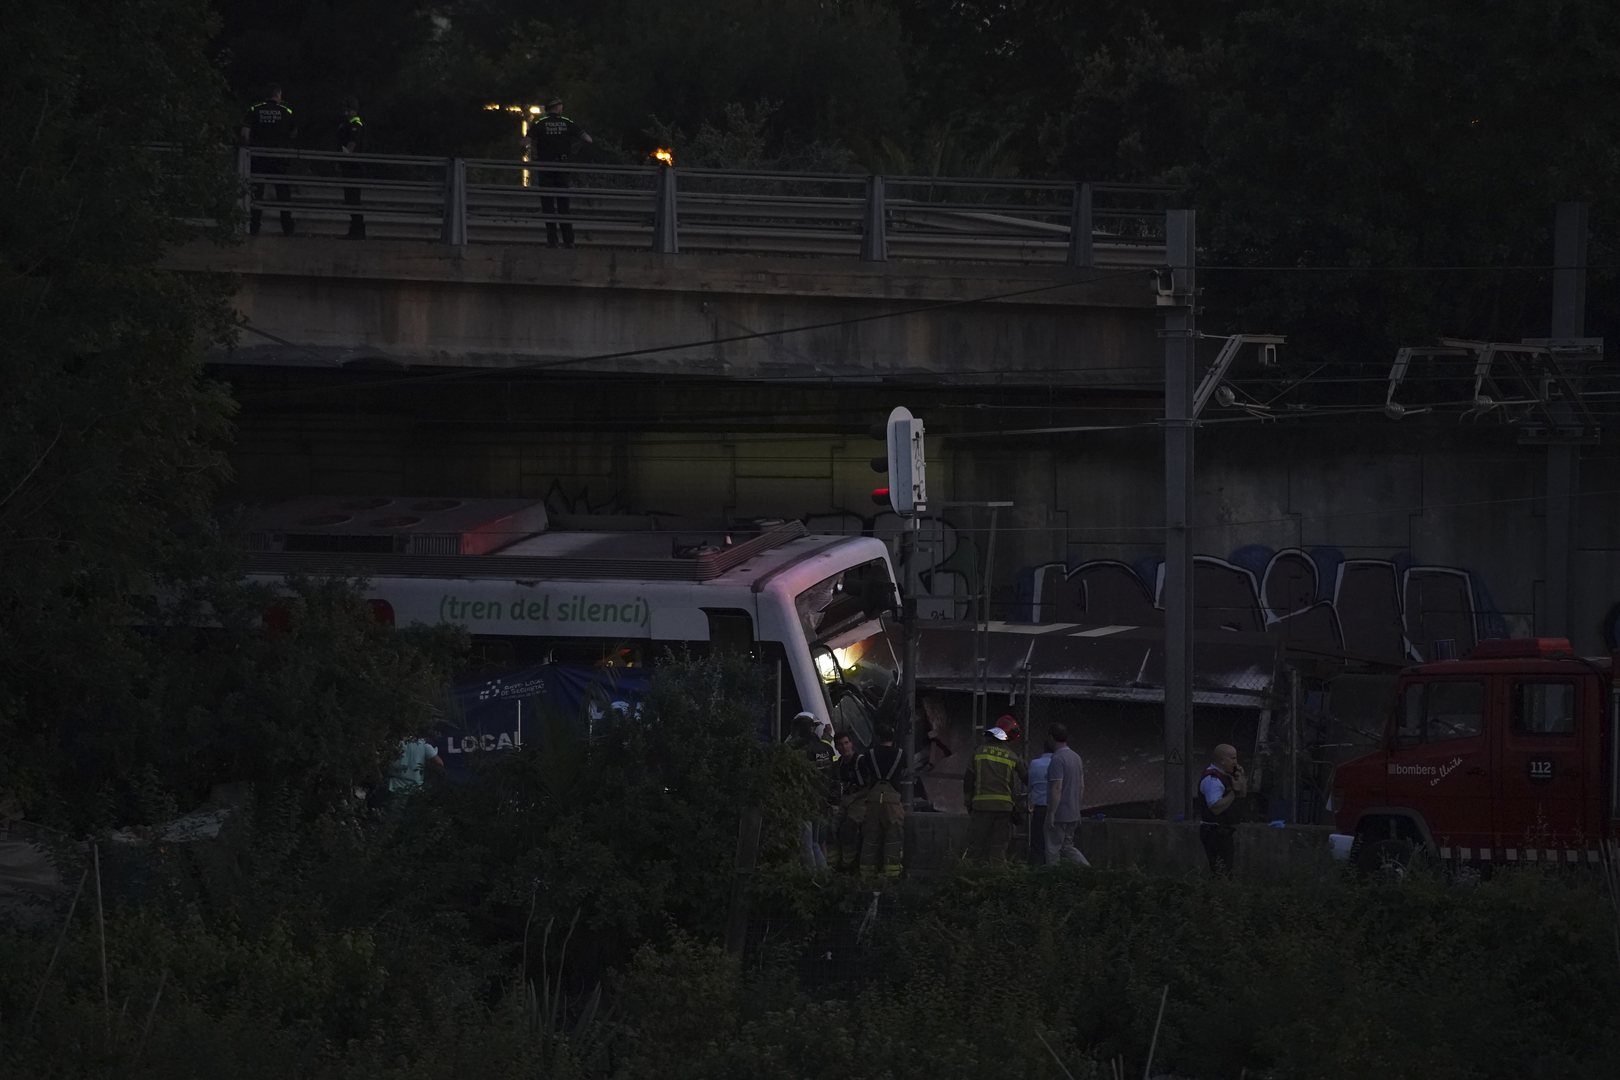 إصابة العشرات في حادث قطار بمقاطعة تاراغونا الإسبانية